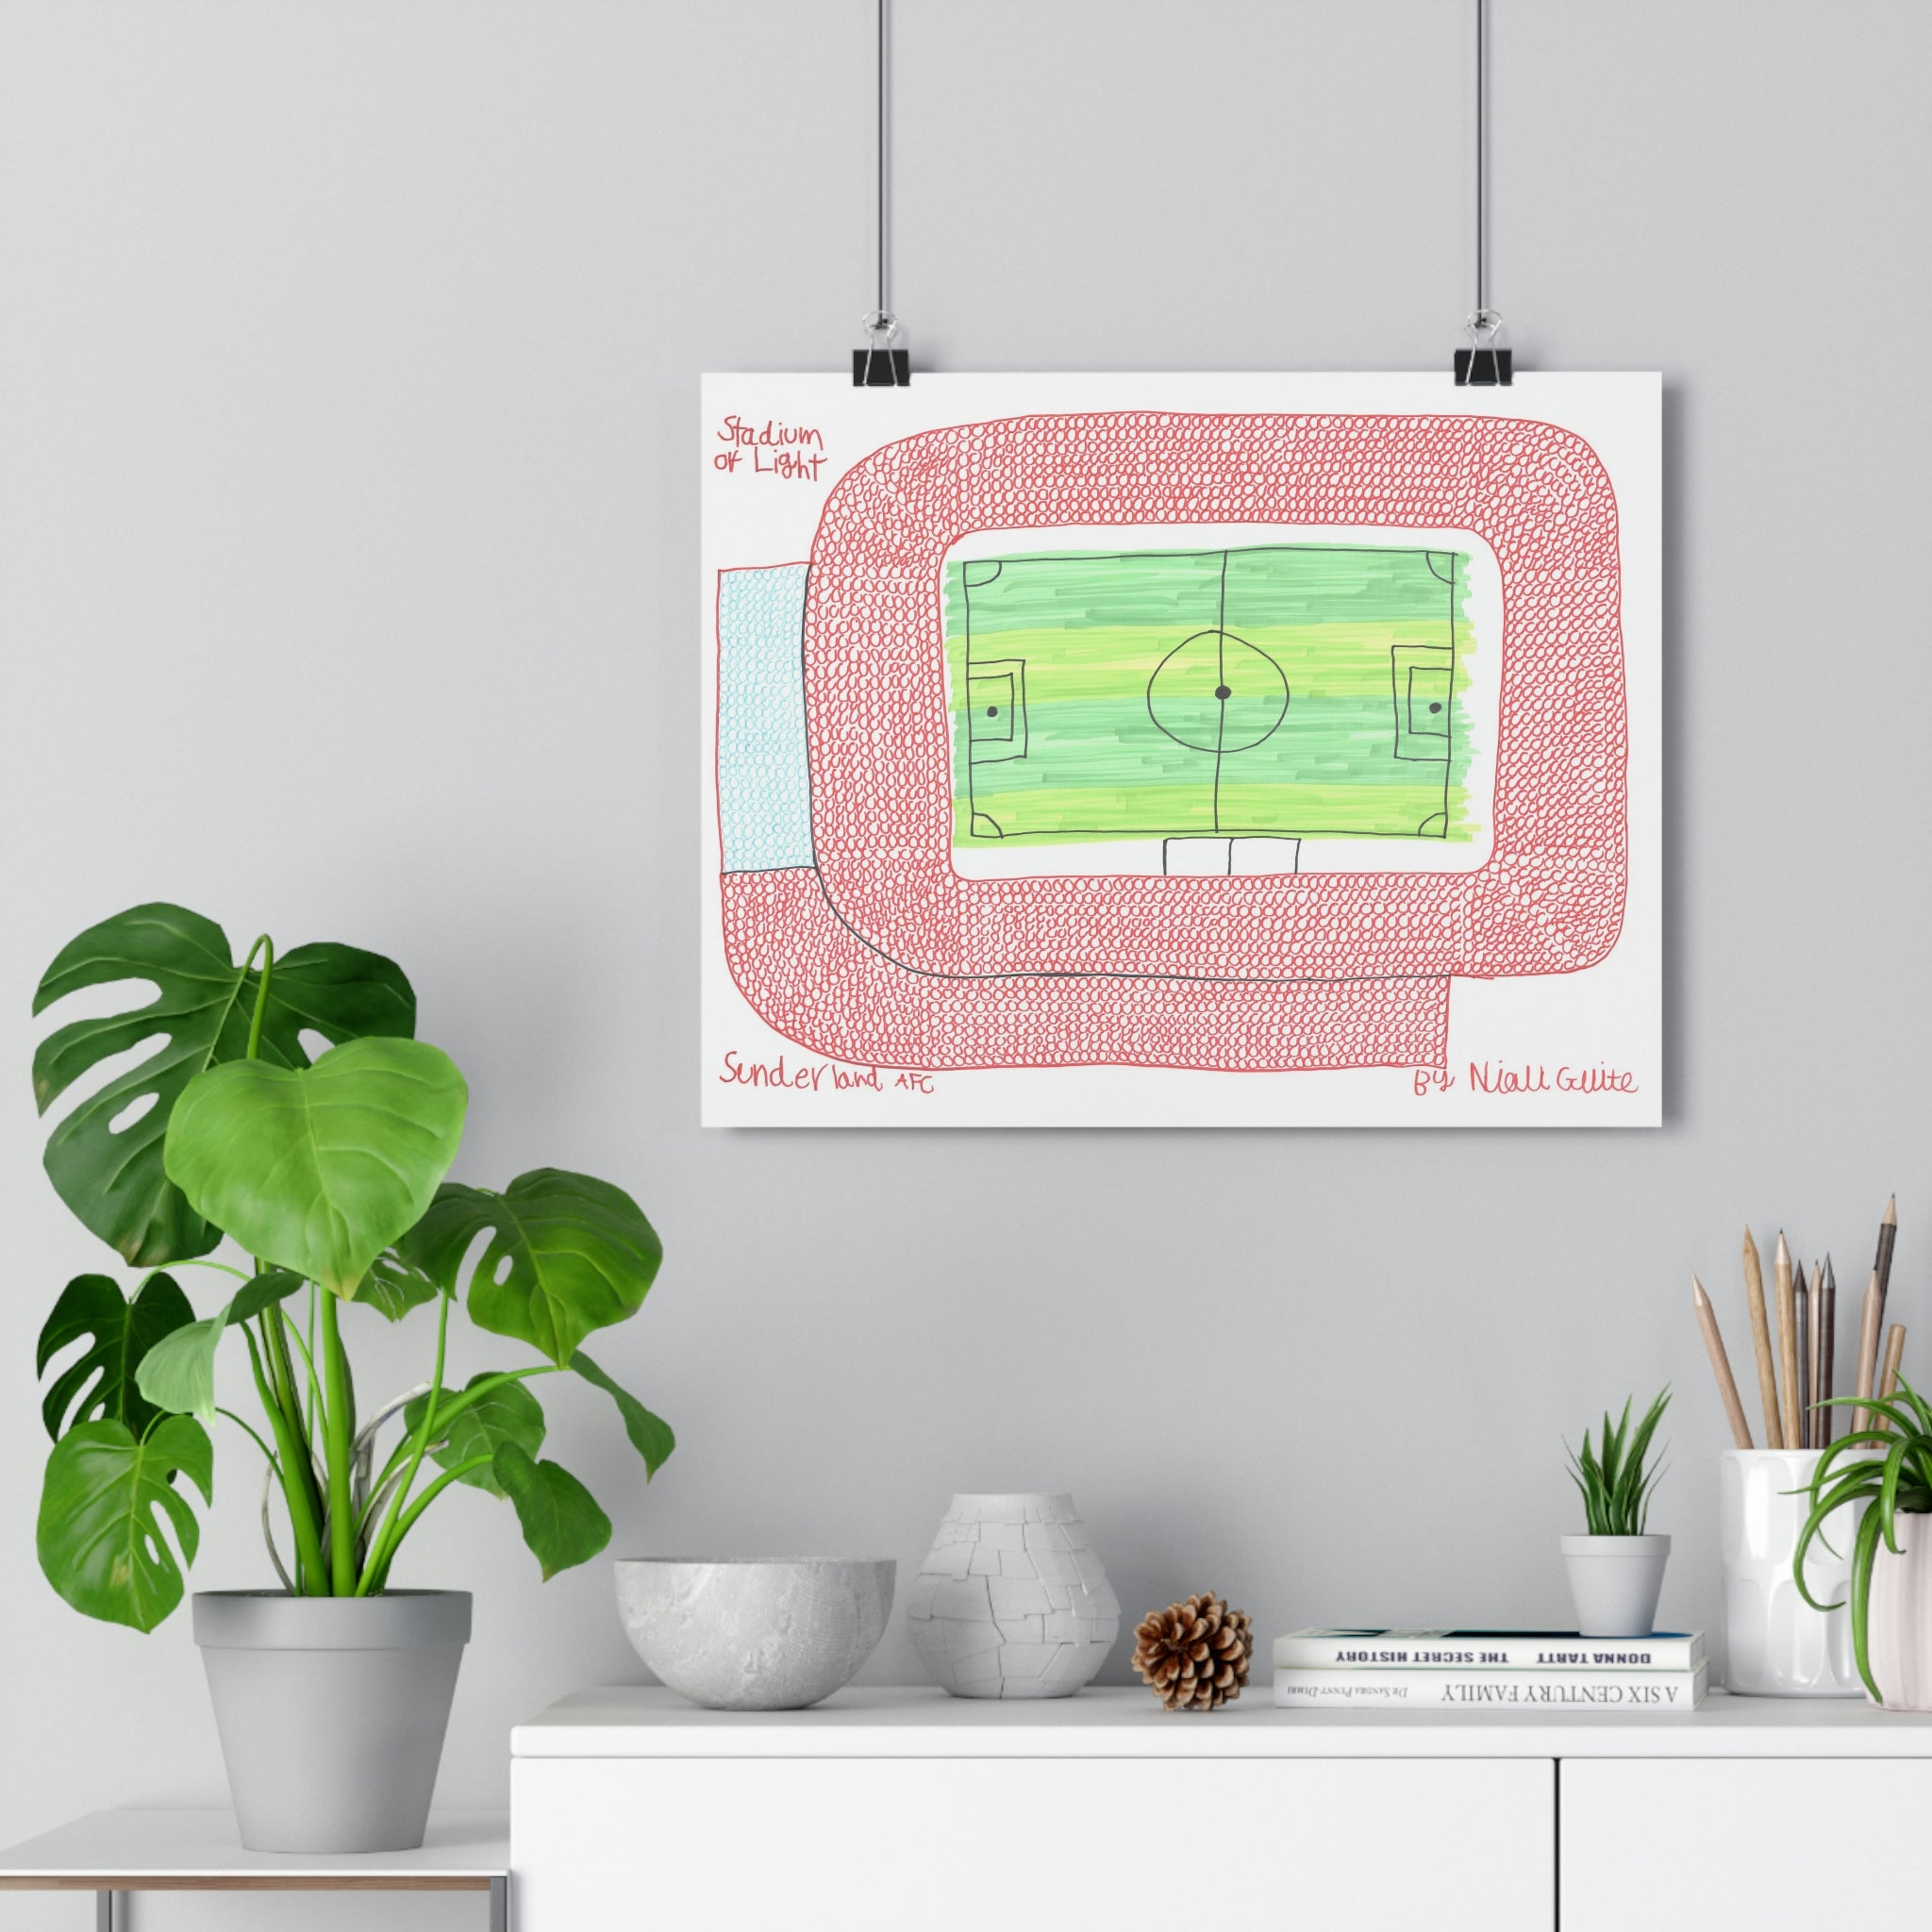 Sunderland - Stadium of Light - Print